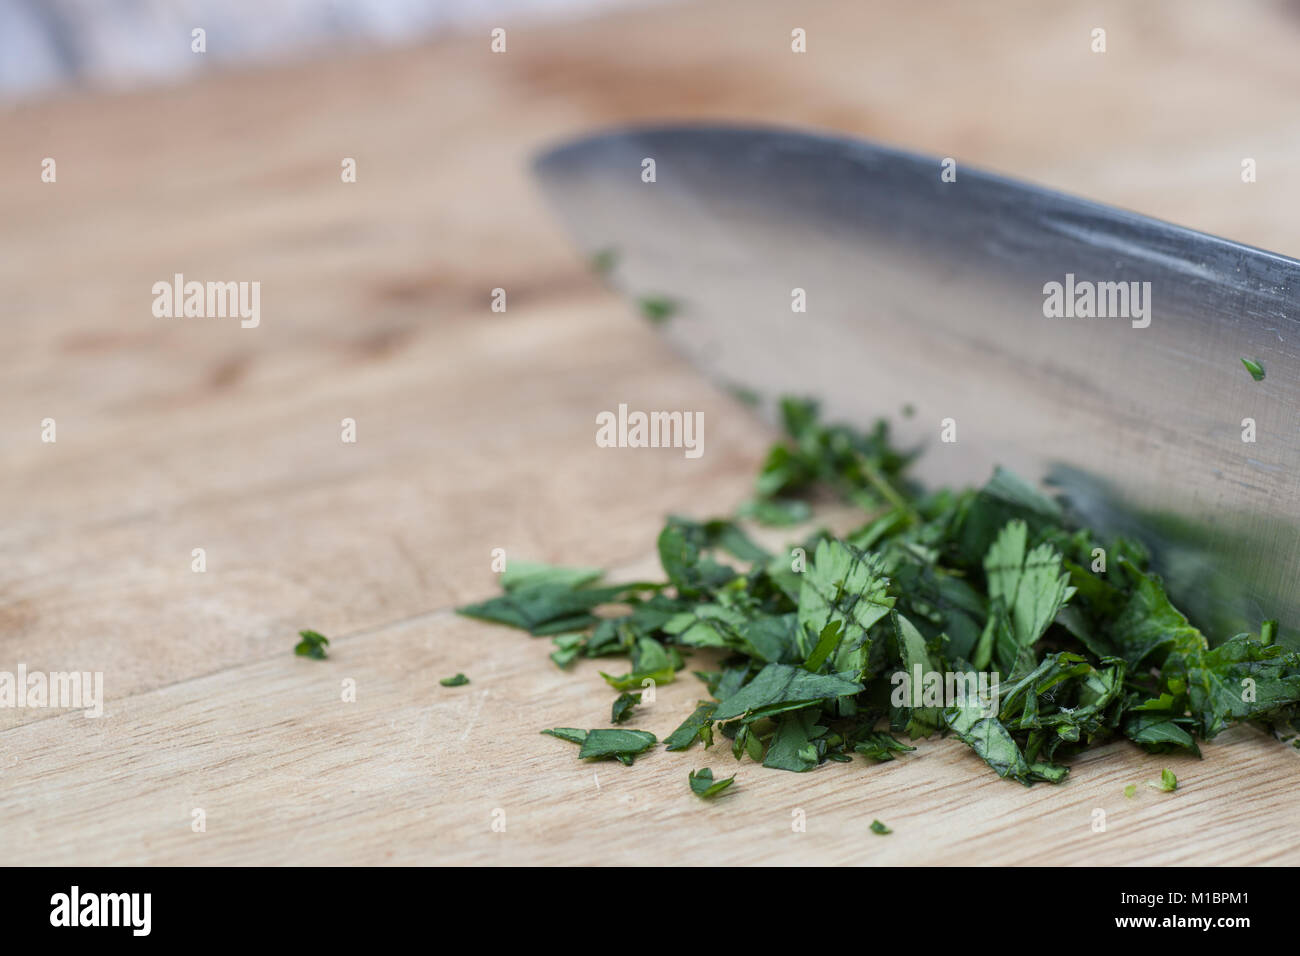 Küche Messer zerkleinern von frischem Koriander auf Holzbrett  Stockfotografie - Alamy